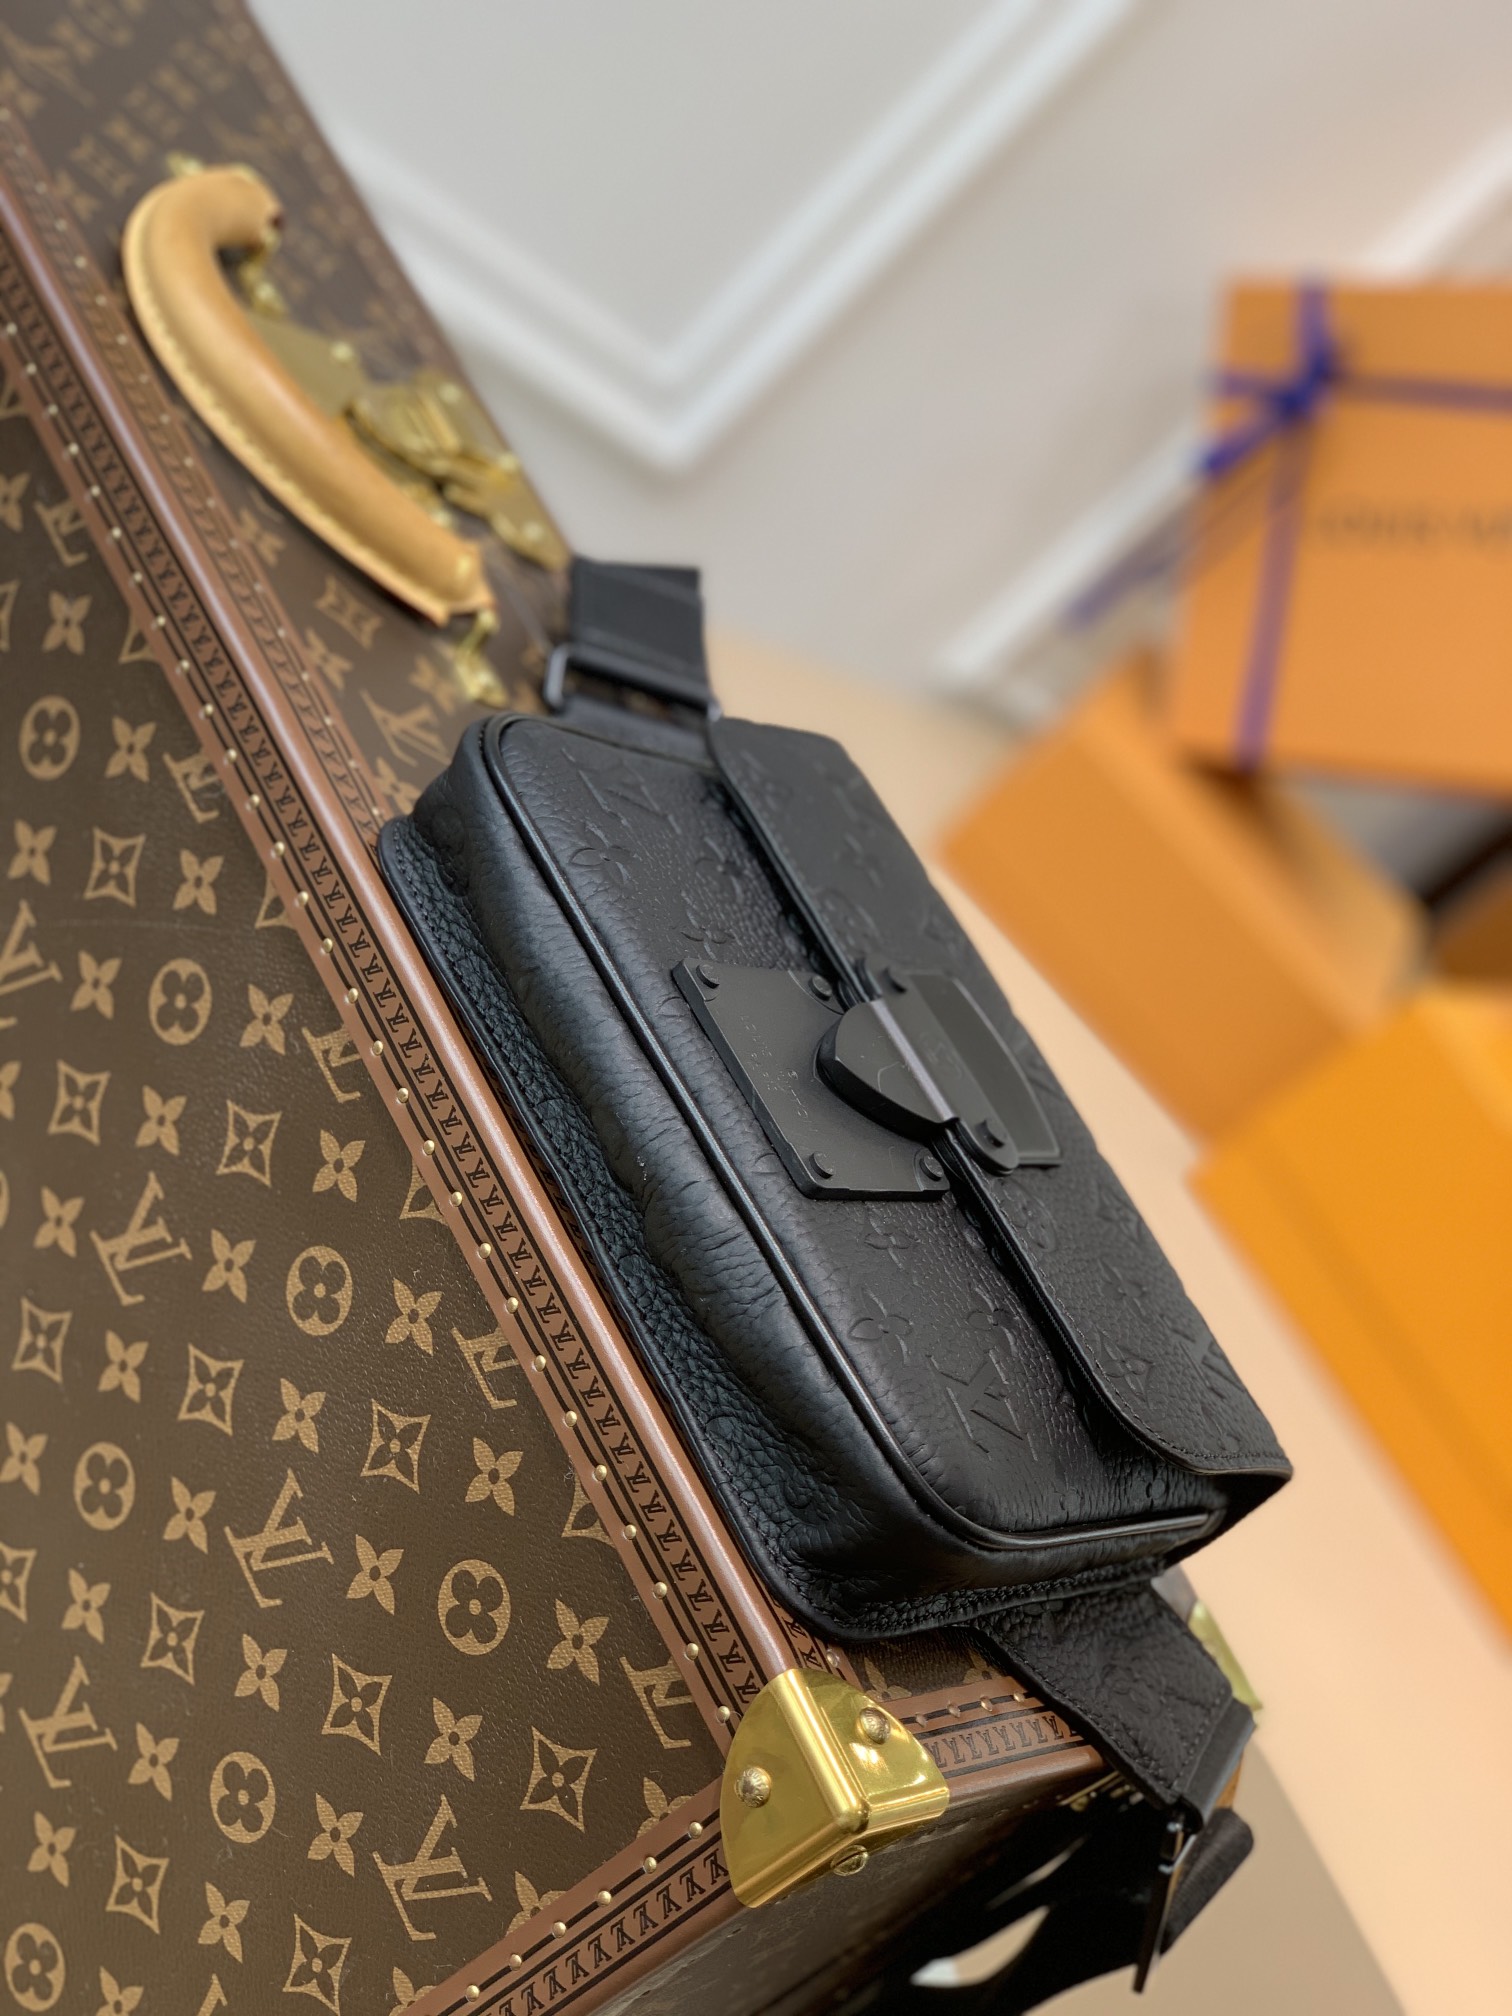 Louis Vuitton MONOGRAM S Lock Sling Bag (M58487, M58486